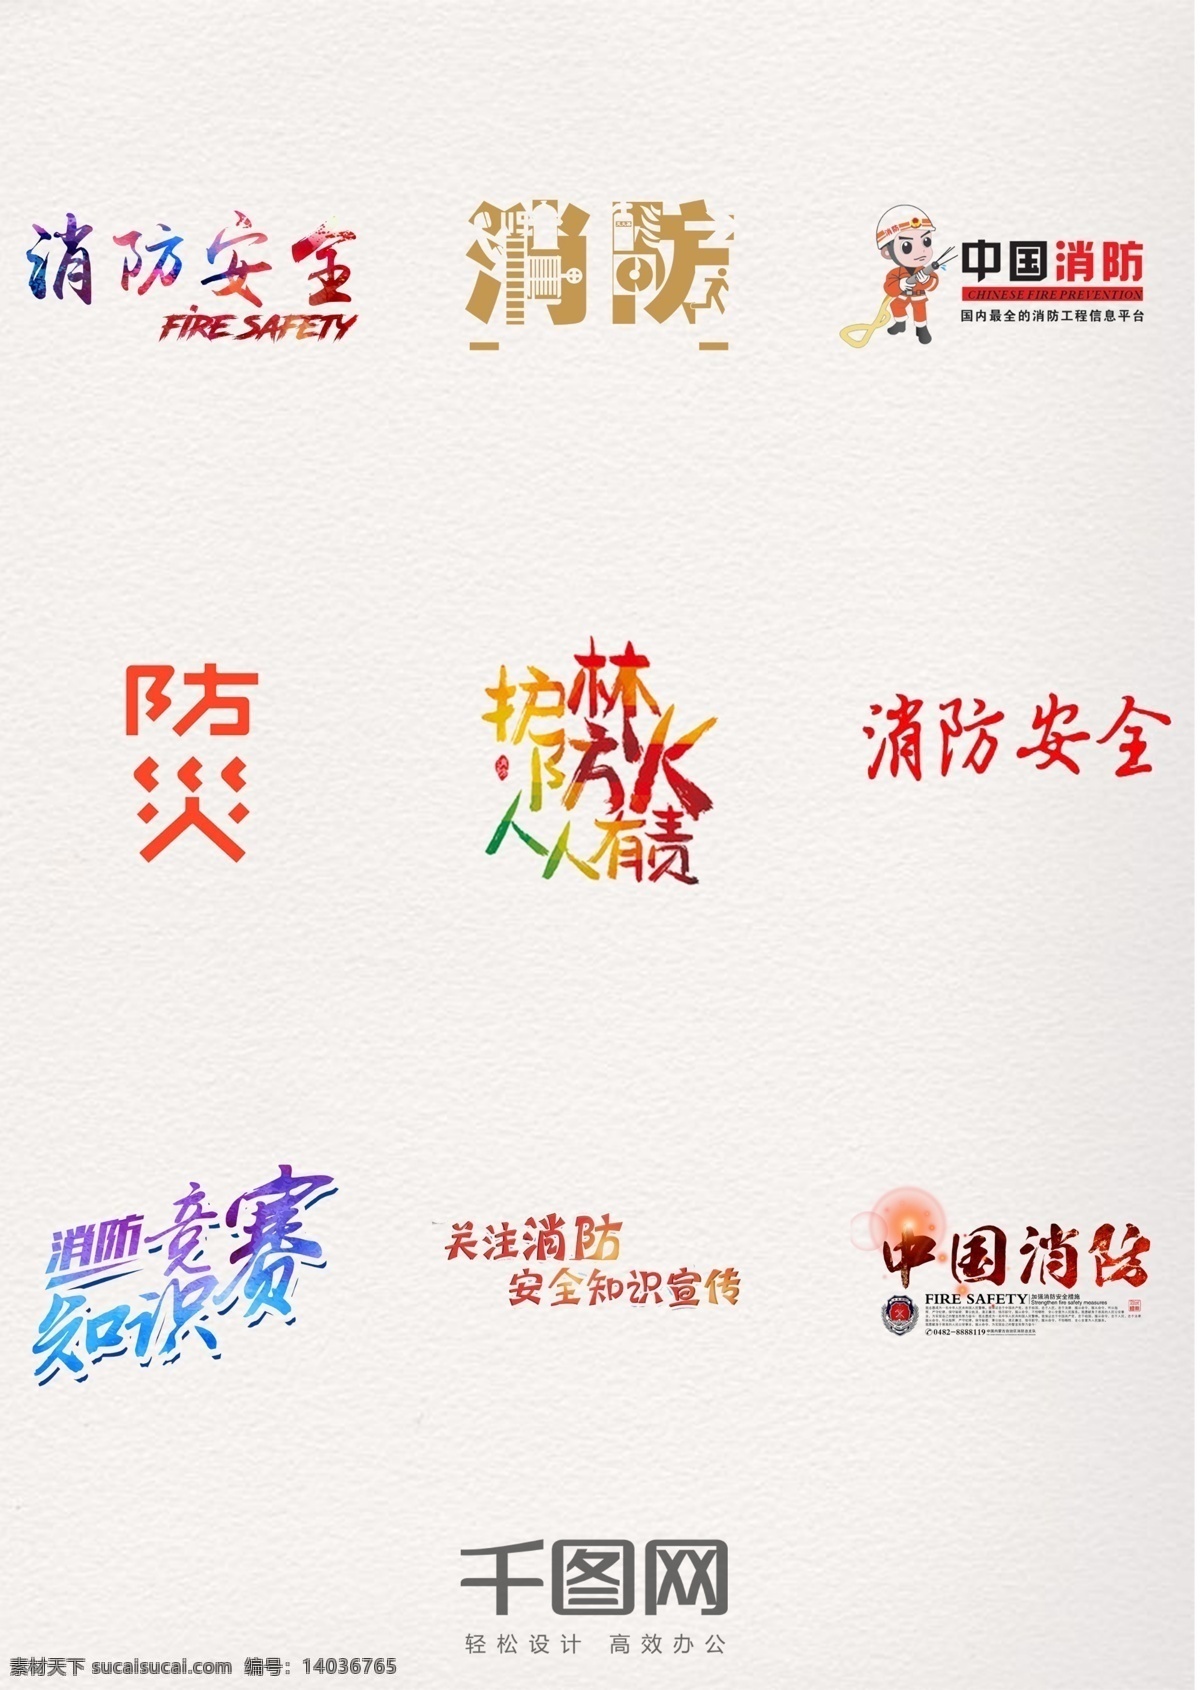 防火 消防 安全 人人 有责 中国 消防日 字体 防患于未然 关注消防 消防安全 艺术字体 人人有责